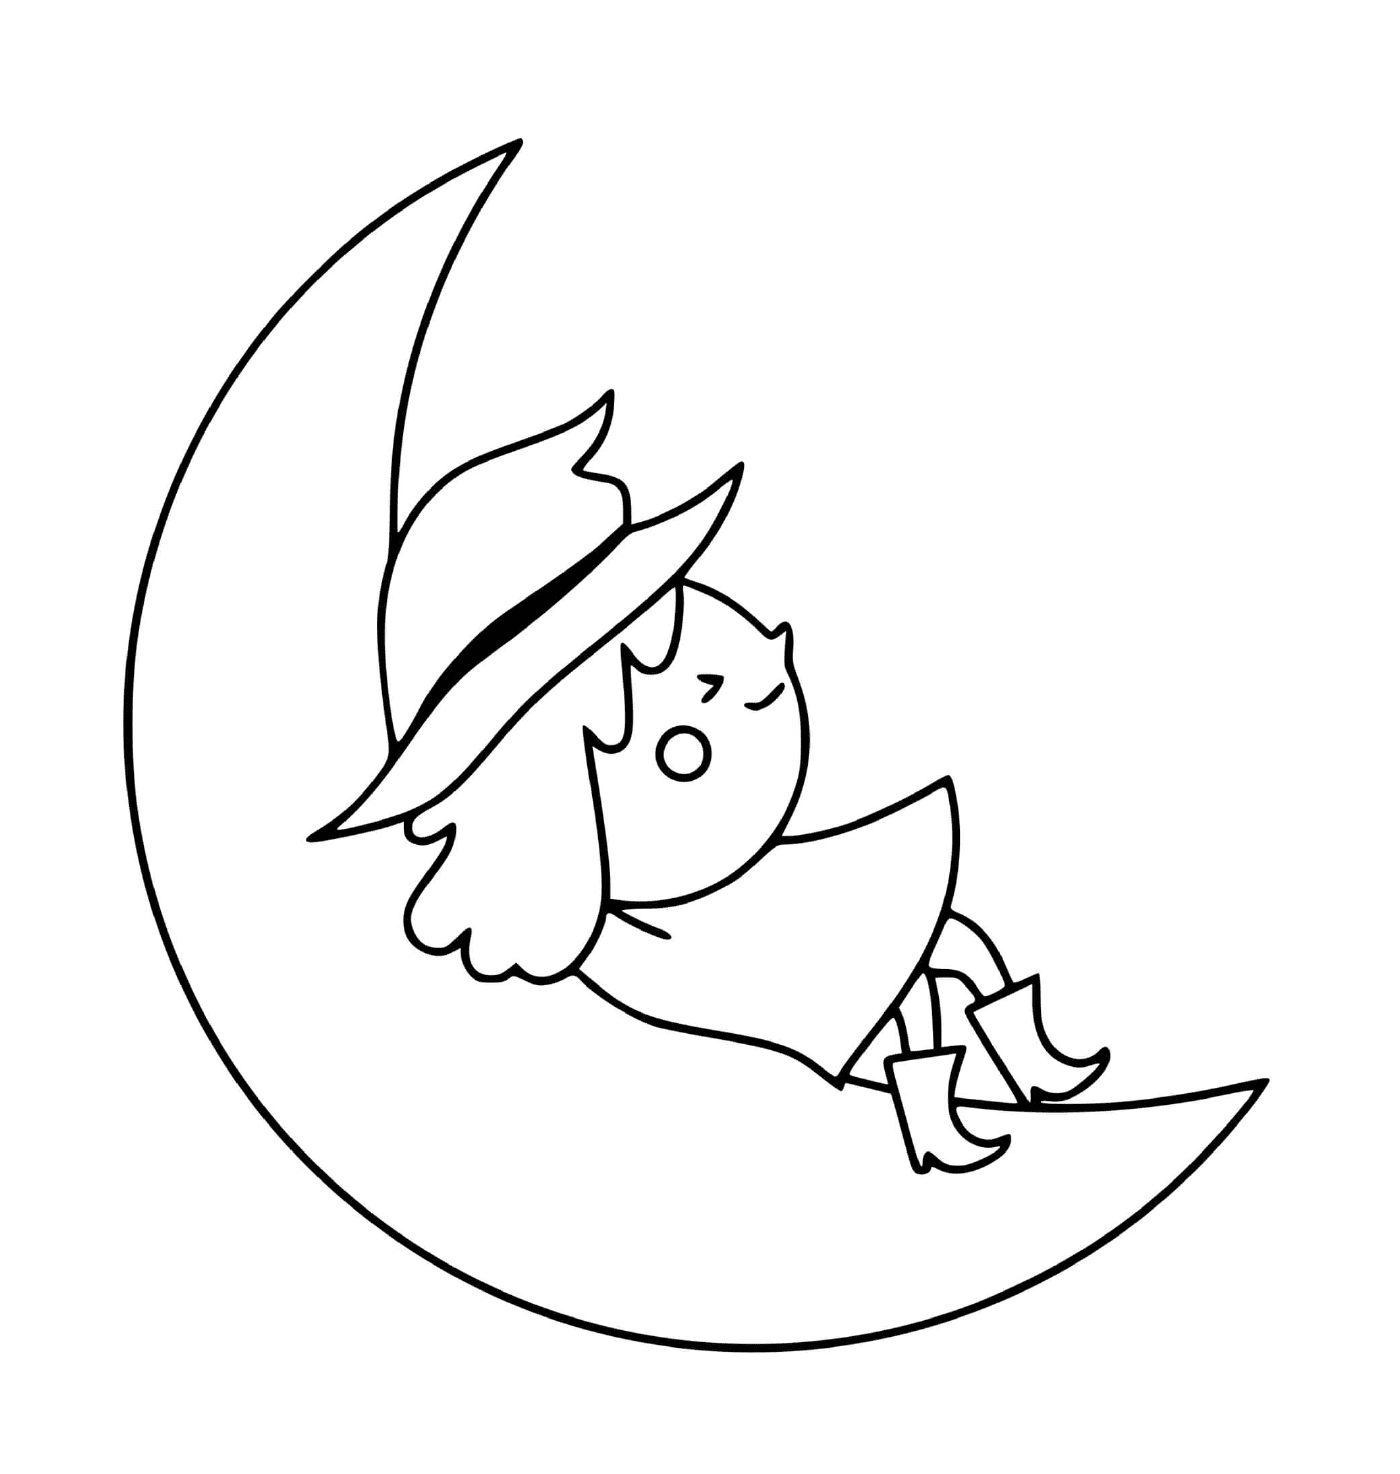  La strega riposa sulla luna 